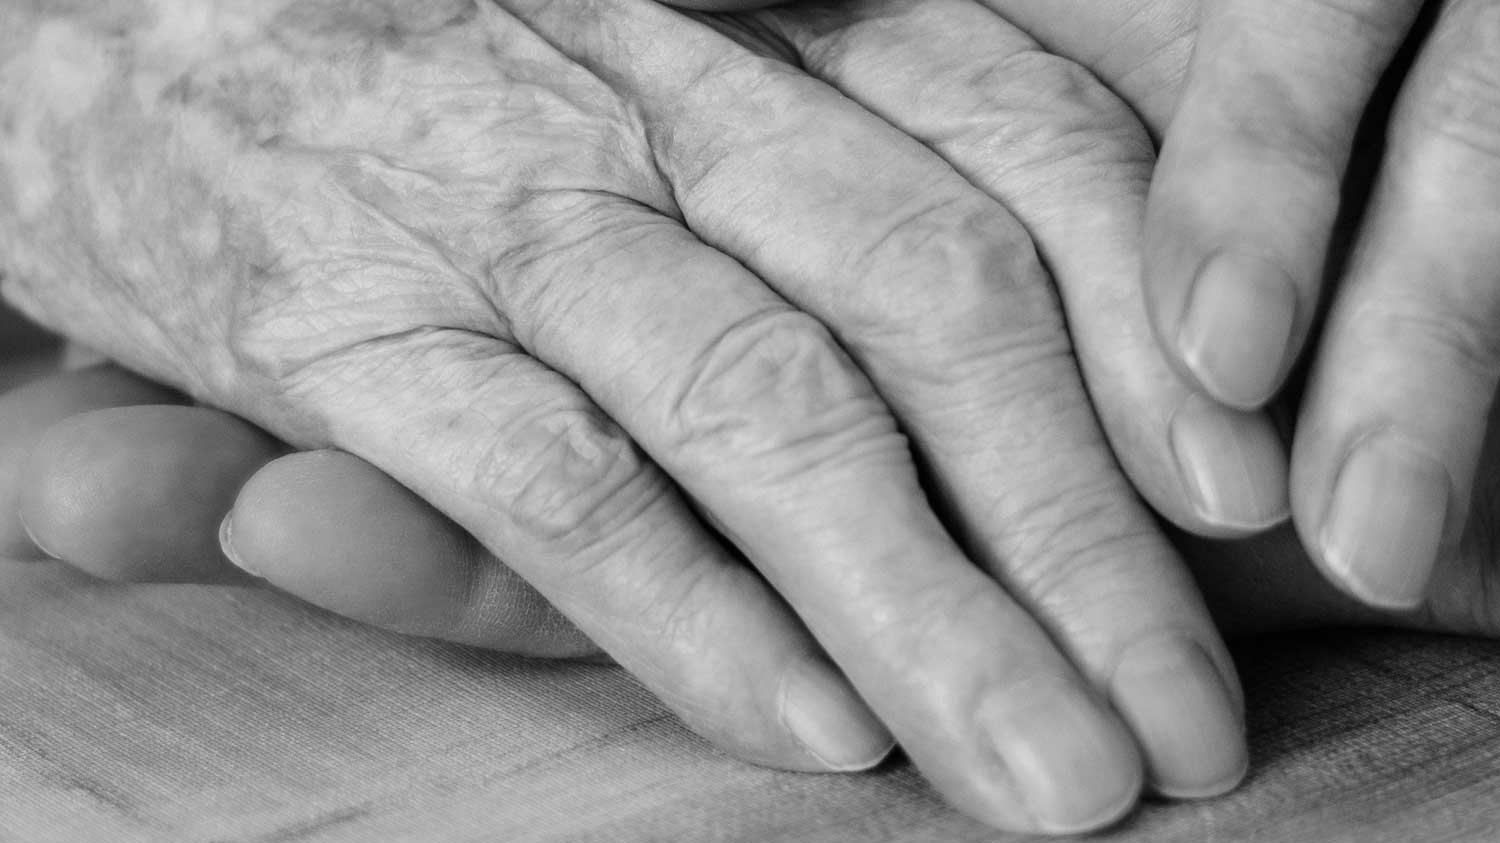 senior citizens aging hands